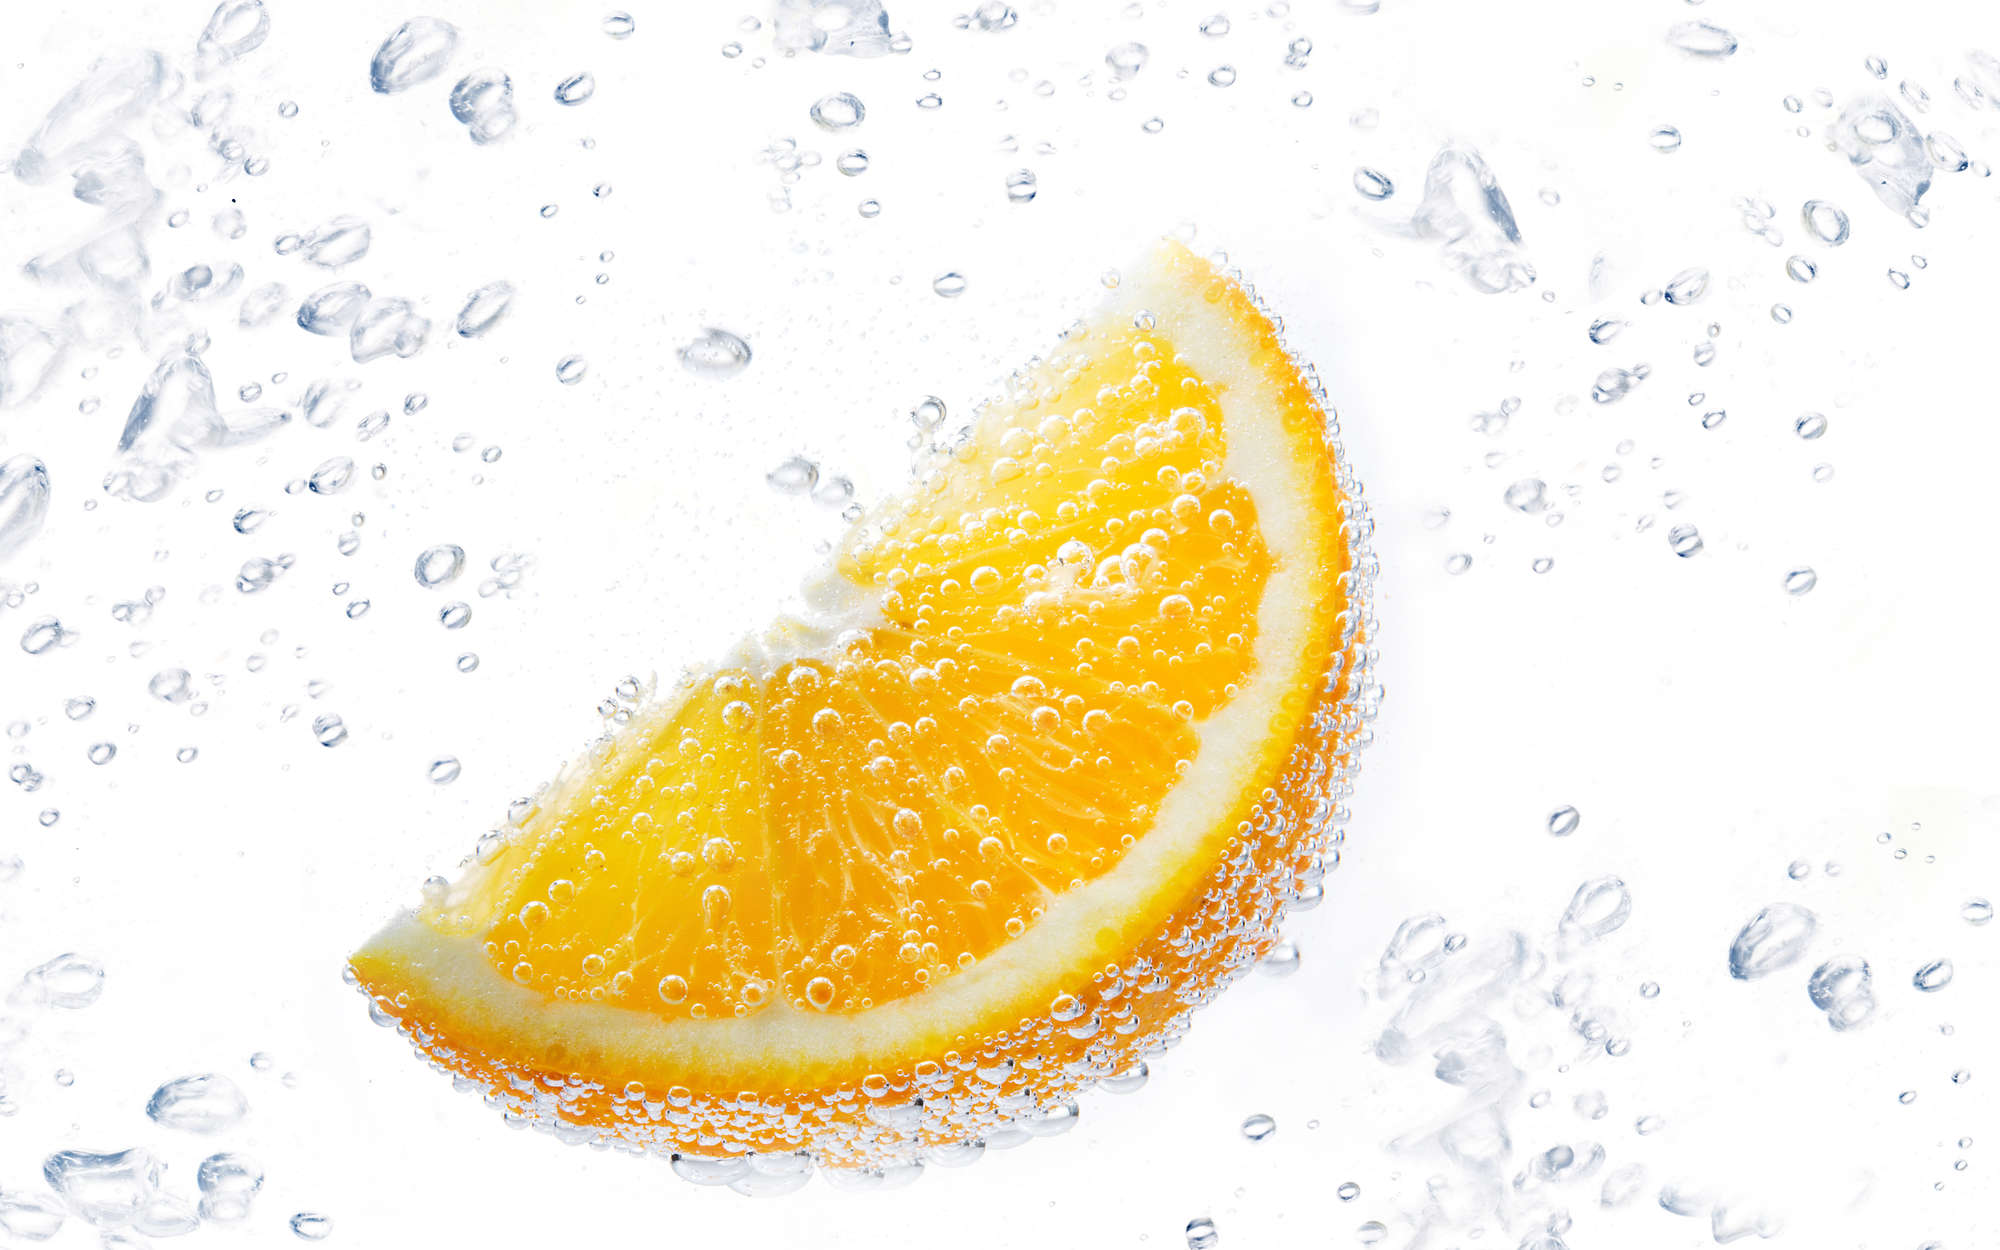             Digital behang Sinaasappel in sprankelend water - Premium glad vlies
        